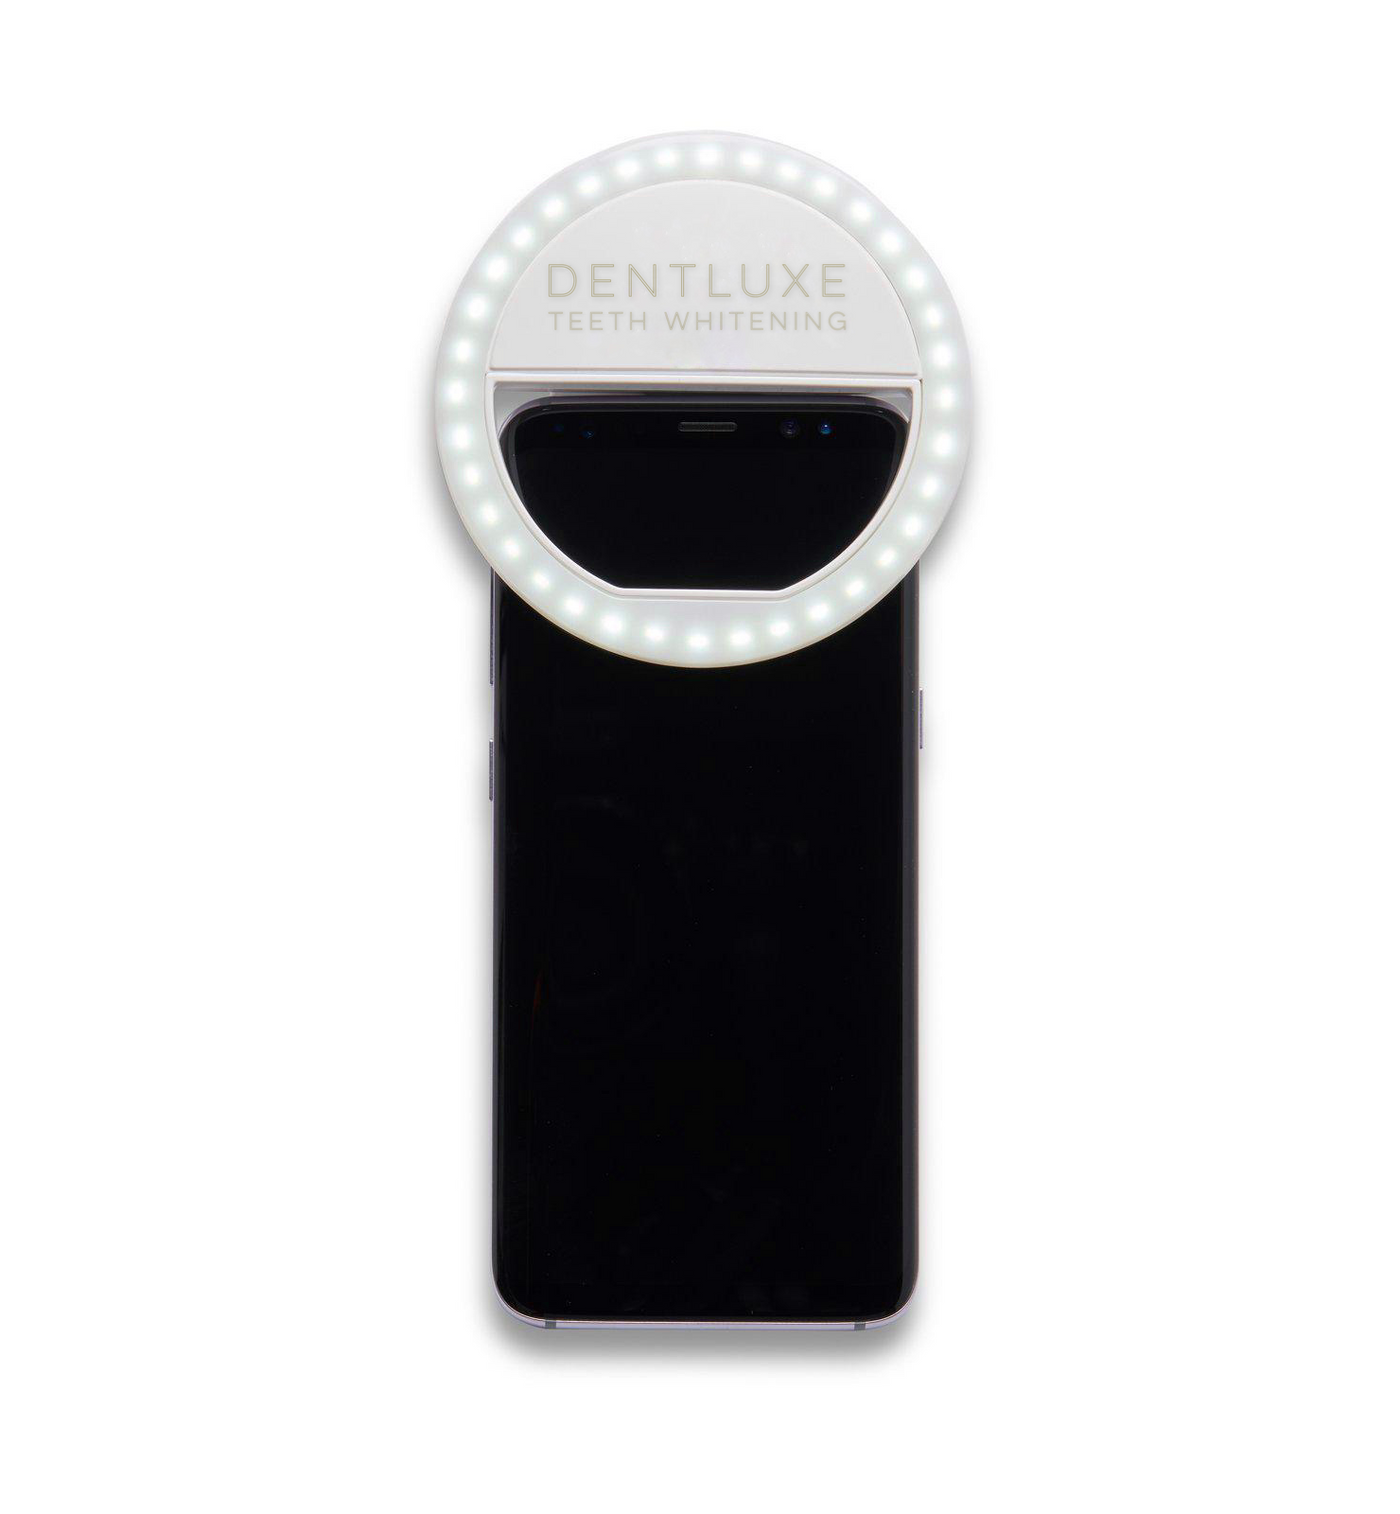 Portable LED Selfie Ring Light - Dentluxe